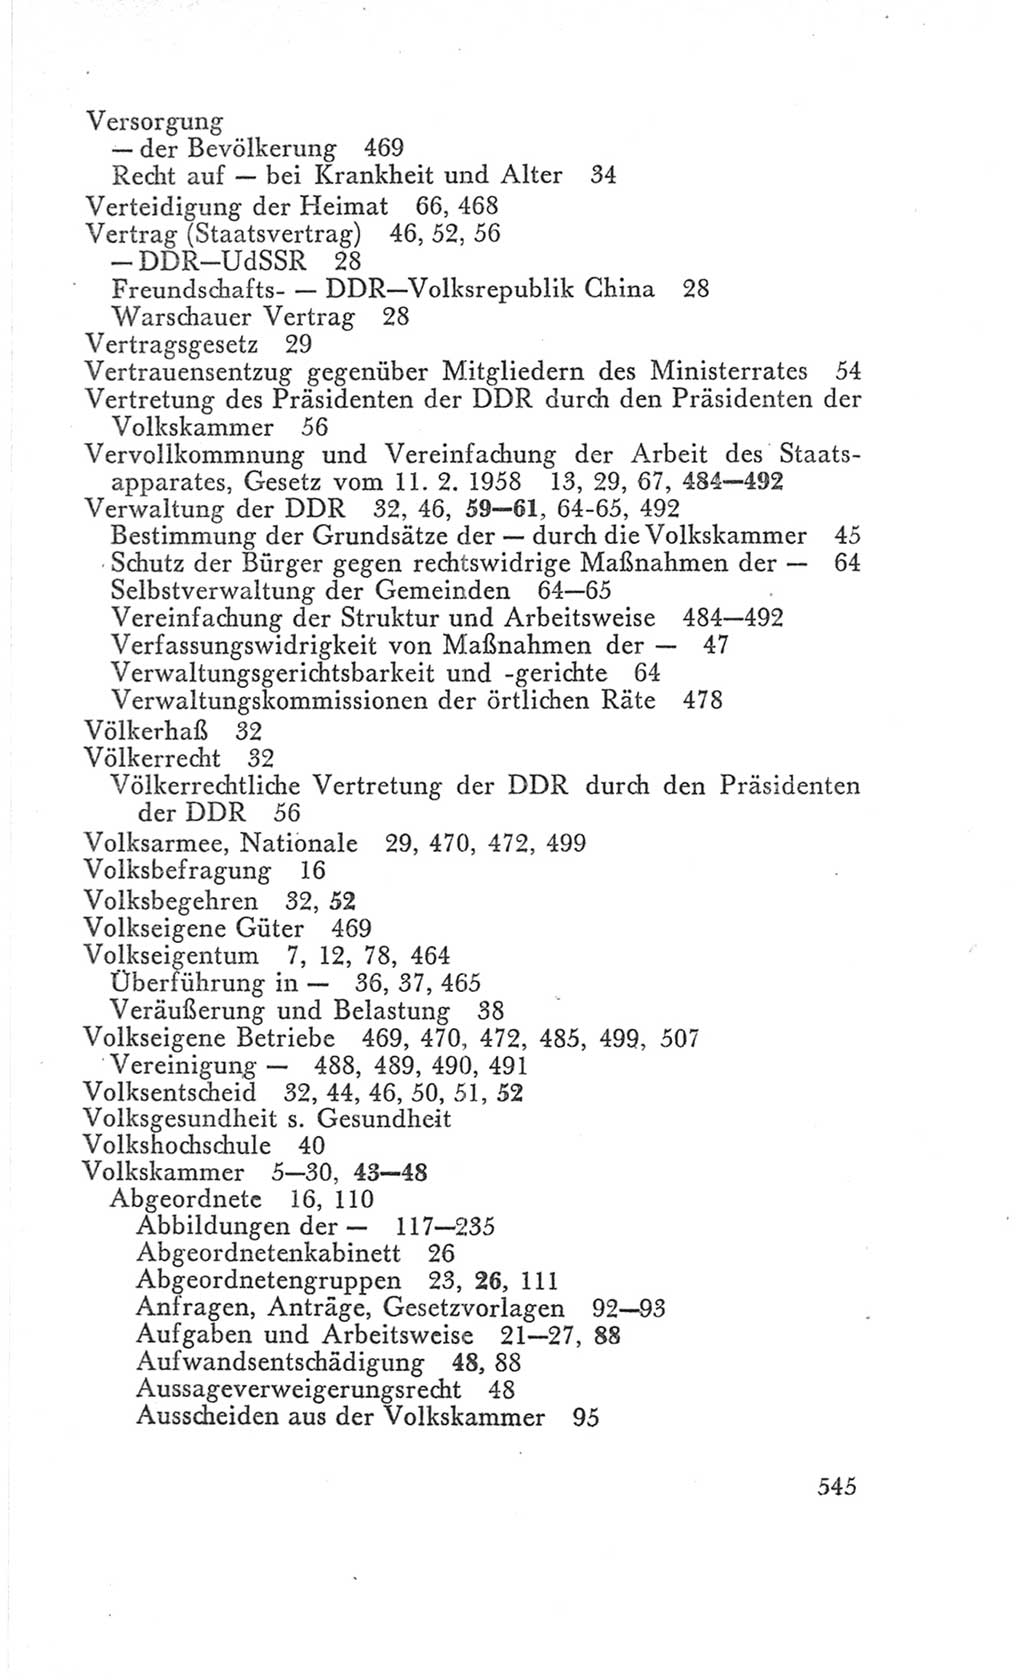 Handbuch der Volkskammer (VK) der Deutschen Demokratischen Republik (DDR), 3. Wahlperiode 1958-1963, Seite 545 (Hdb. VK. DDR 3. WP. 1958-1963, S. 545)